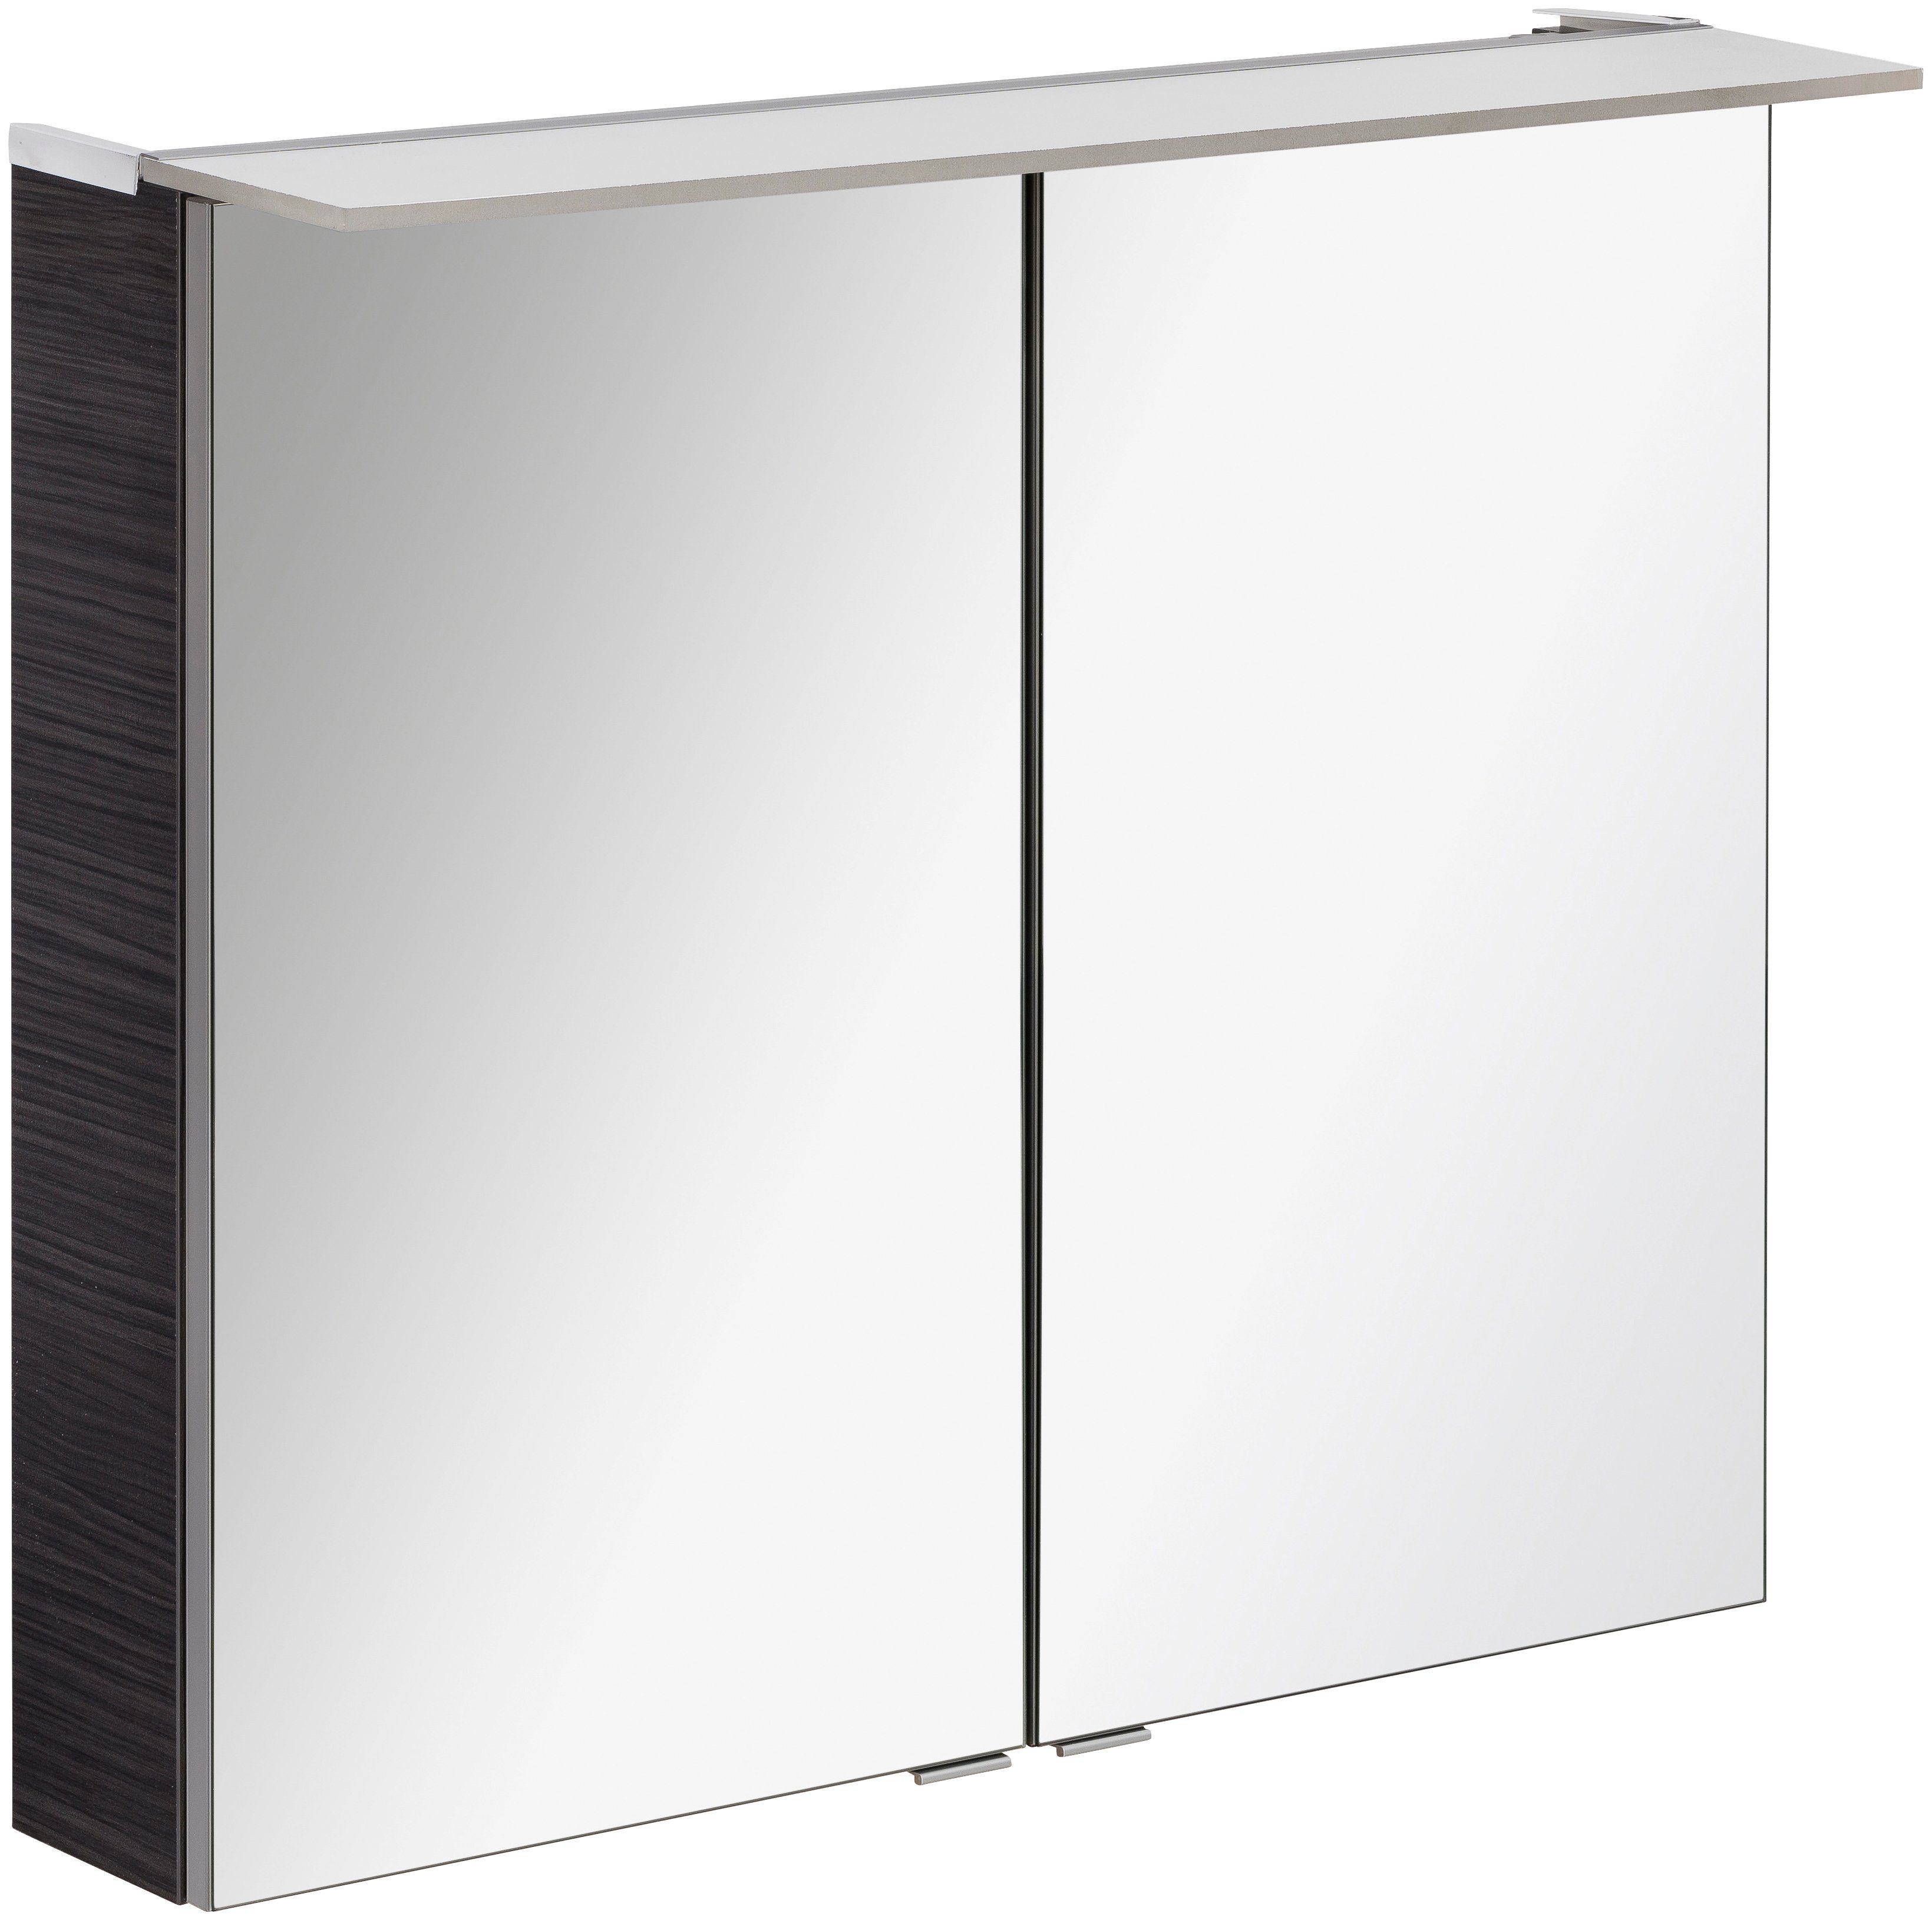 FACKELMANN Spiegelkast Polyester 80 - dark-Oak Breedte 80 cm, 2 deuren, dubbelzijdig spiegelend